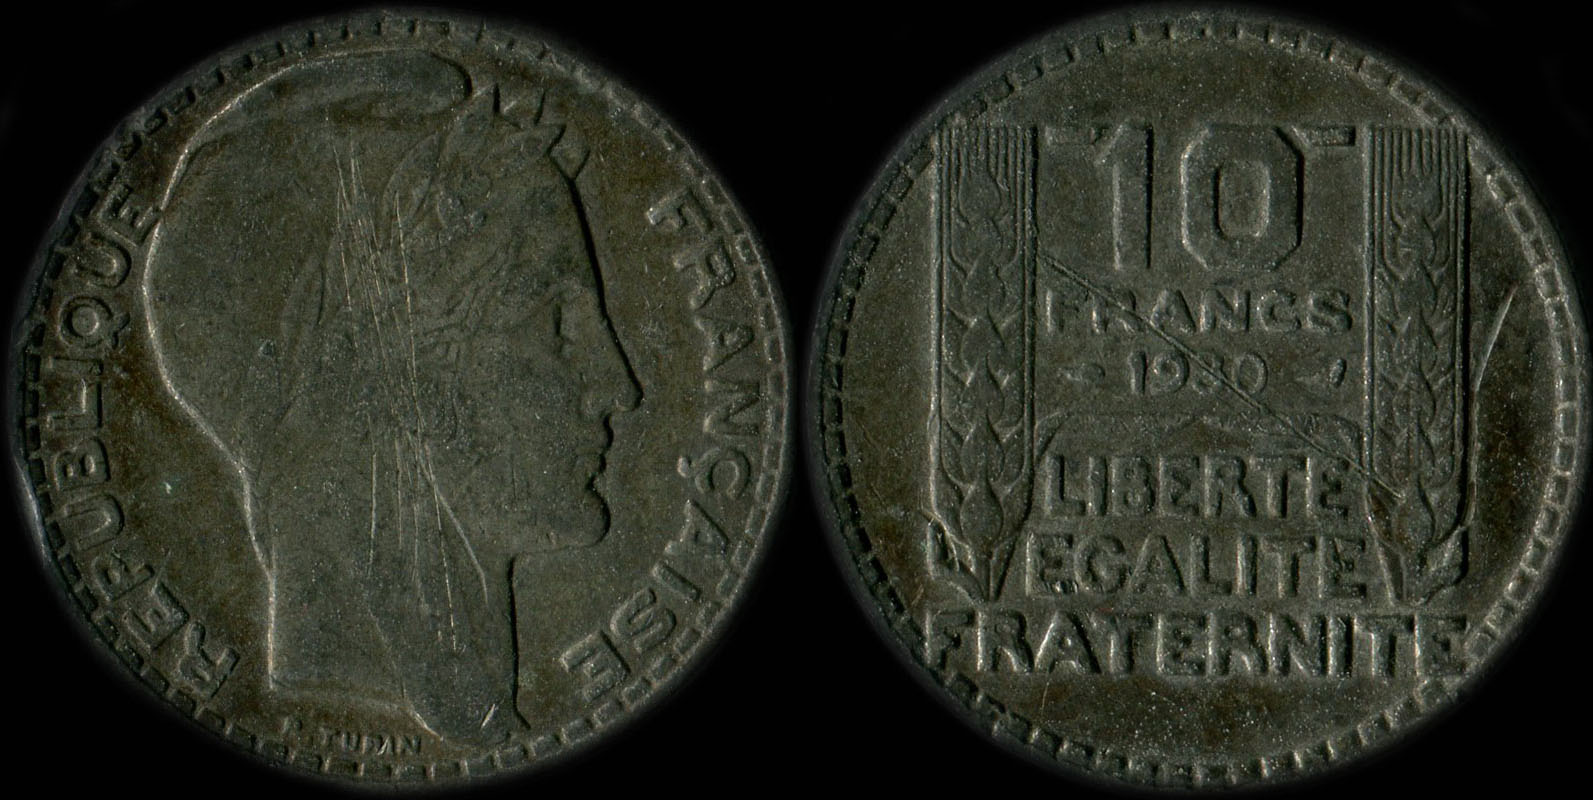 Pice de 10 francs Turin 1930 (fausse en maillechort?)